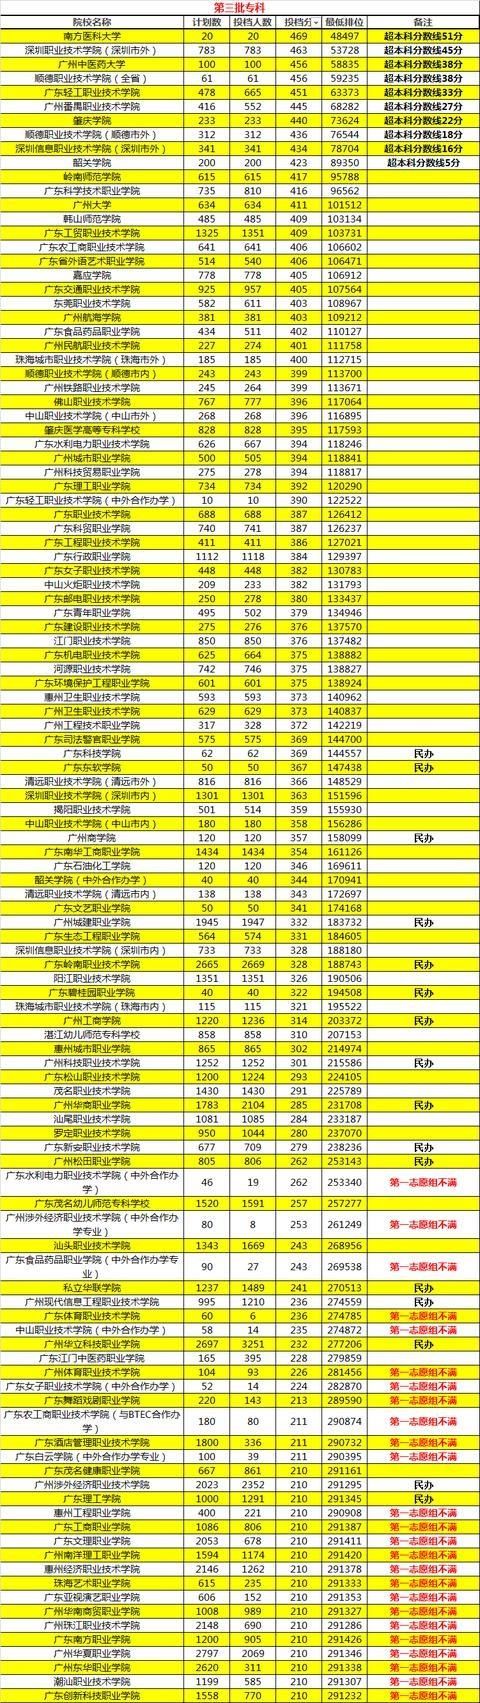 独家,2017年广东专科院校最新排行榜,哪所大学录取分数最高?